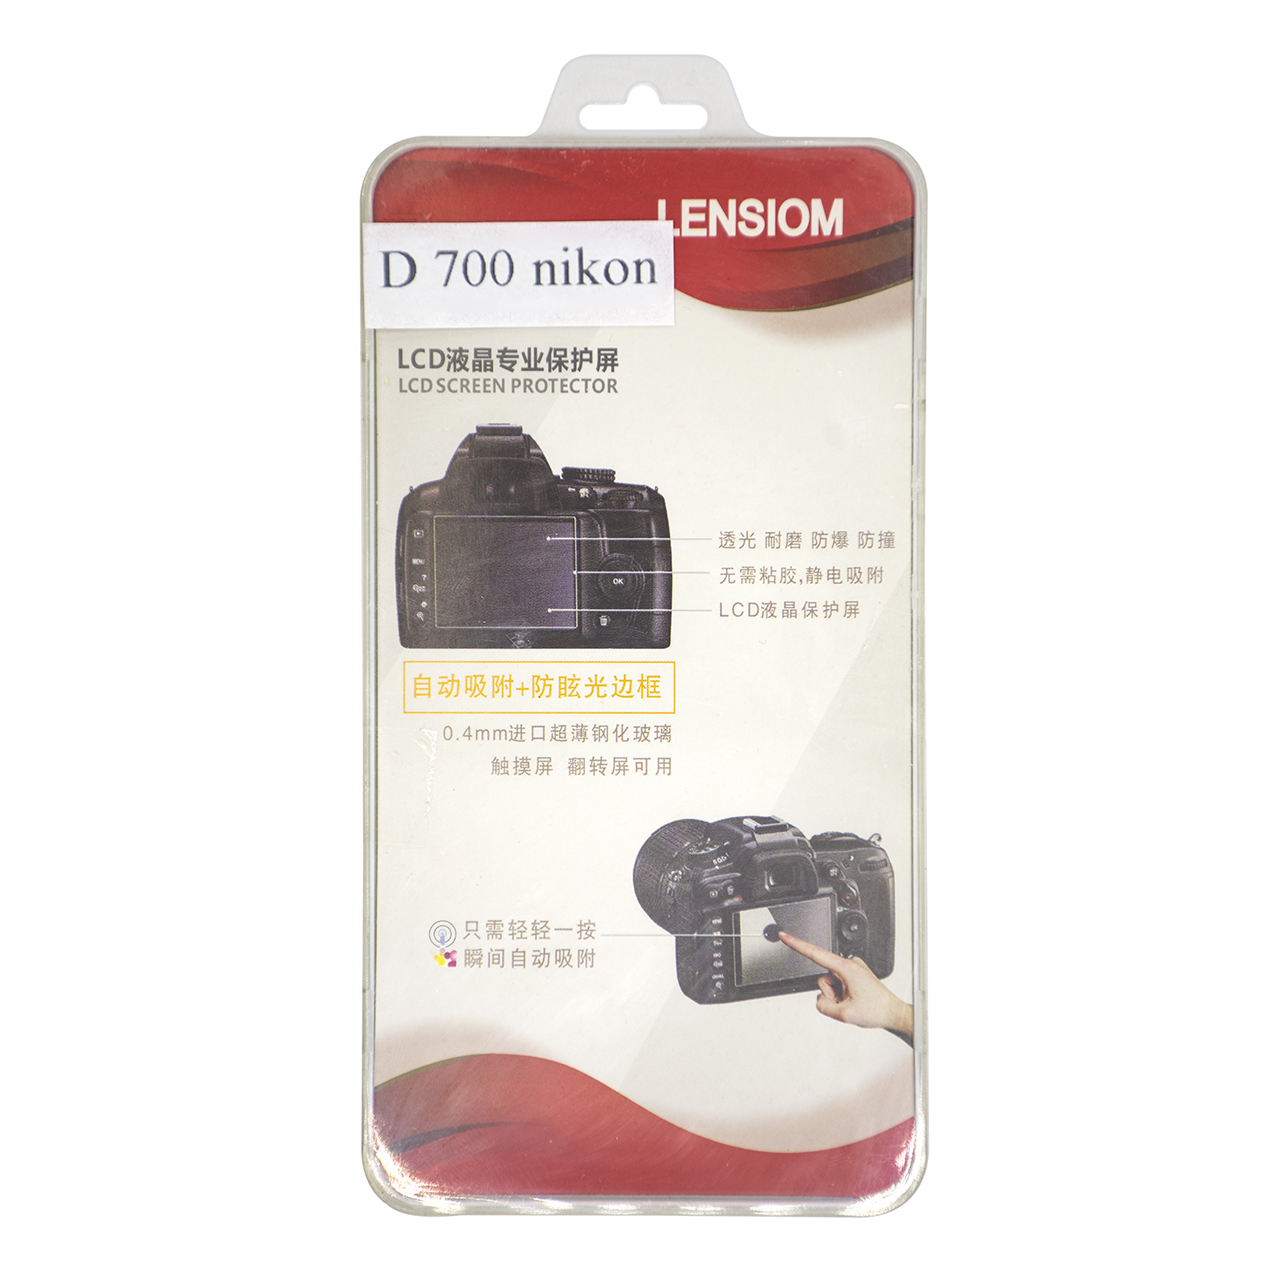 محافظ صفحه نمایش دوربین لنزیوم مدل LD700 مناسب برای نیکون D700